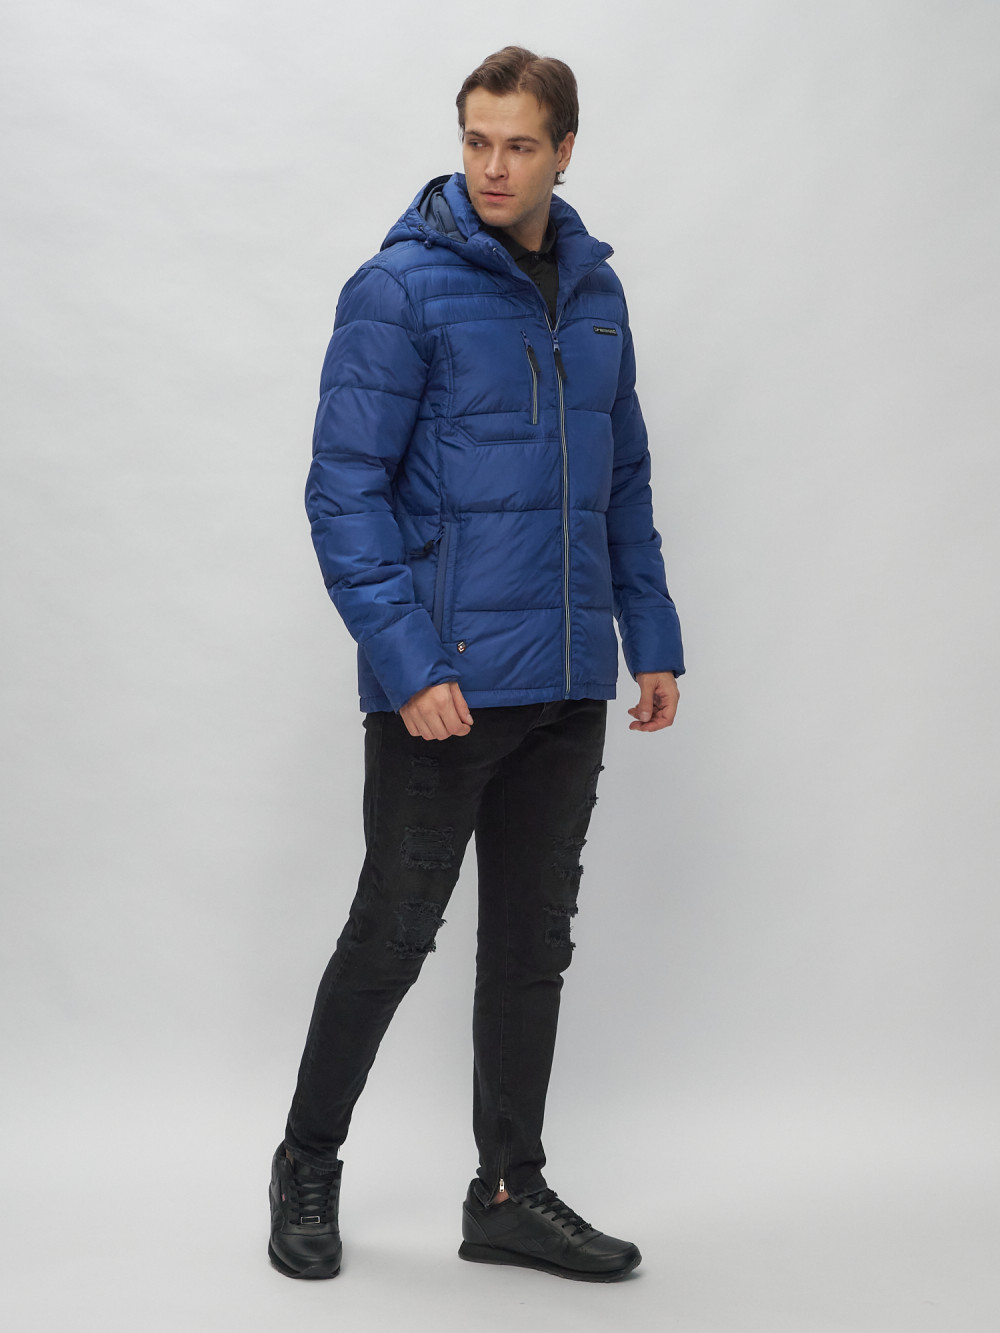 Купить куртку мужскую спортивную весеннюю оптом от производителя недорого в Москве 62190S 1